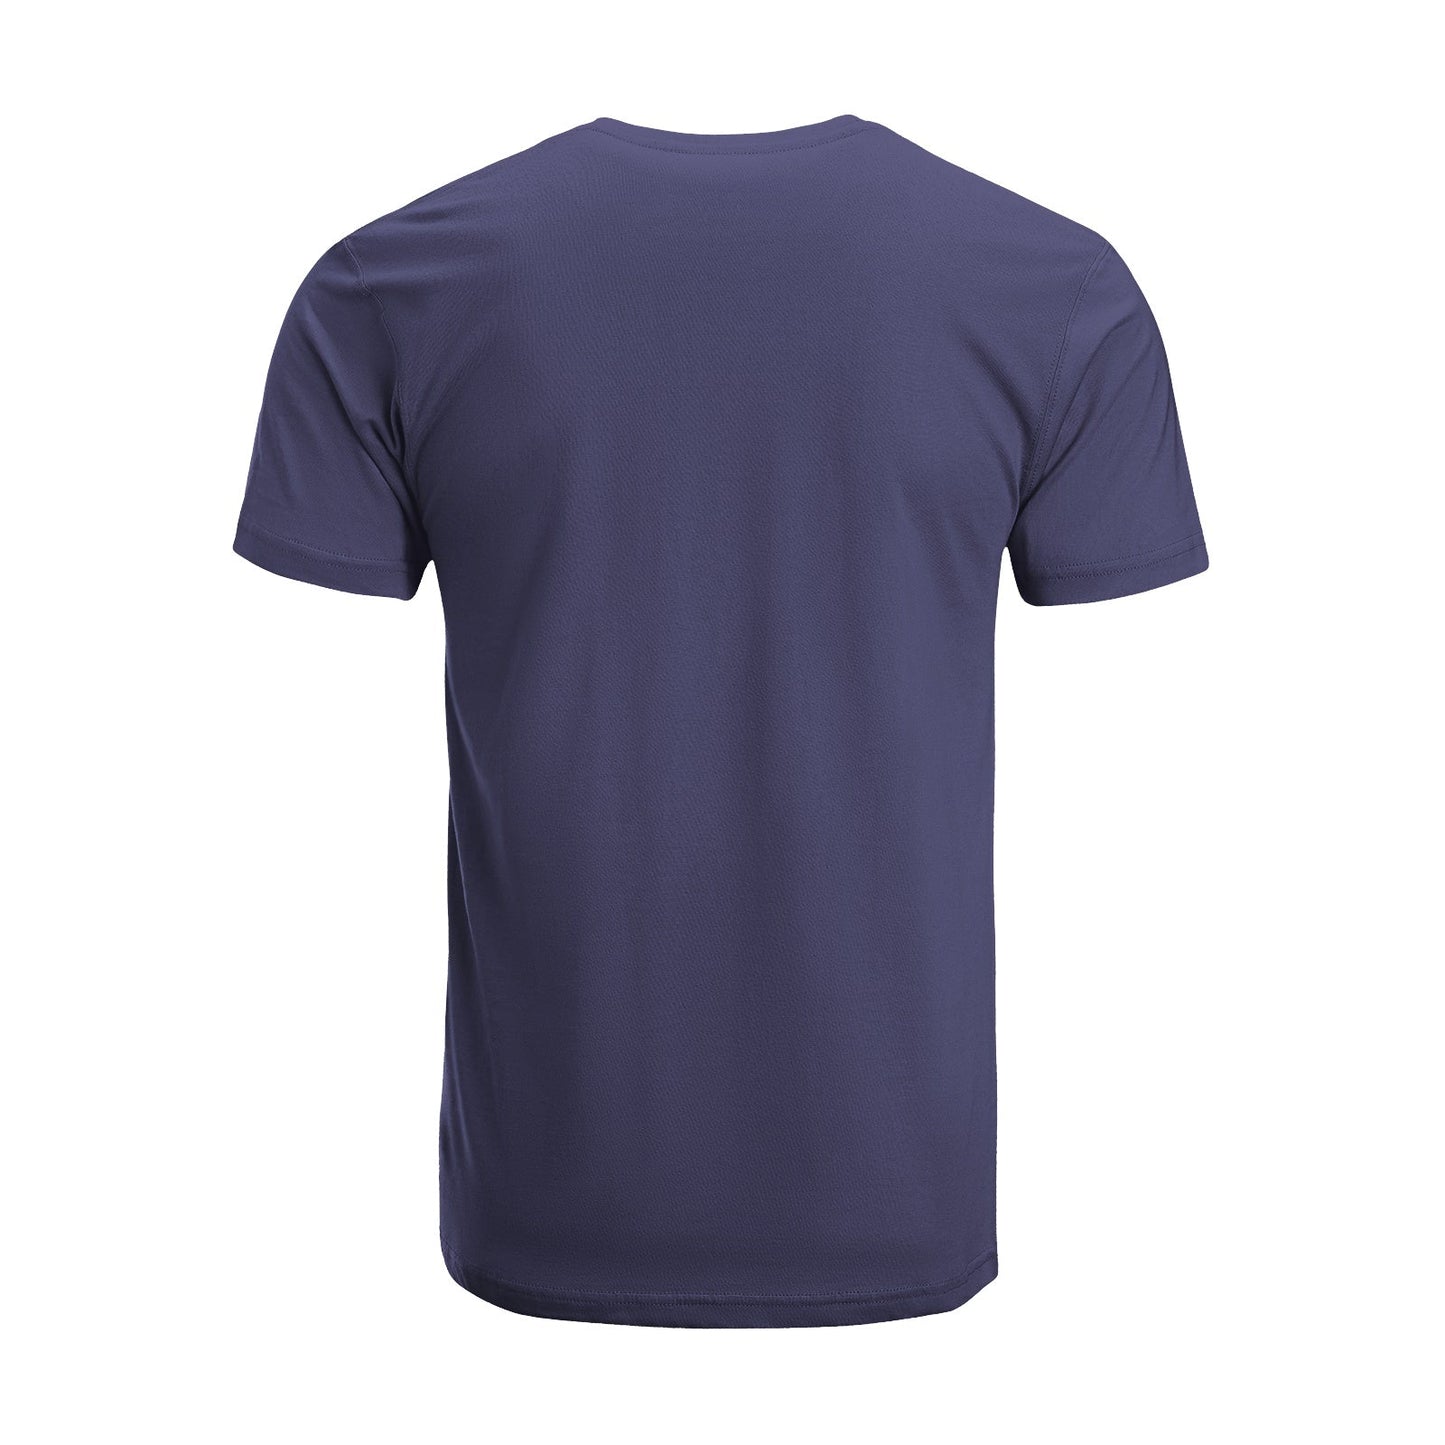 Unisex Short Sleeve Crew Neck Cotton Jersey T-Shirt TRUCK 33